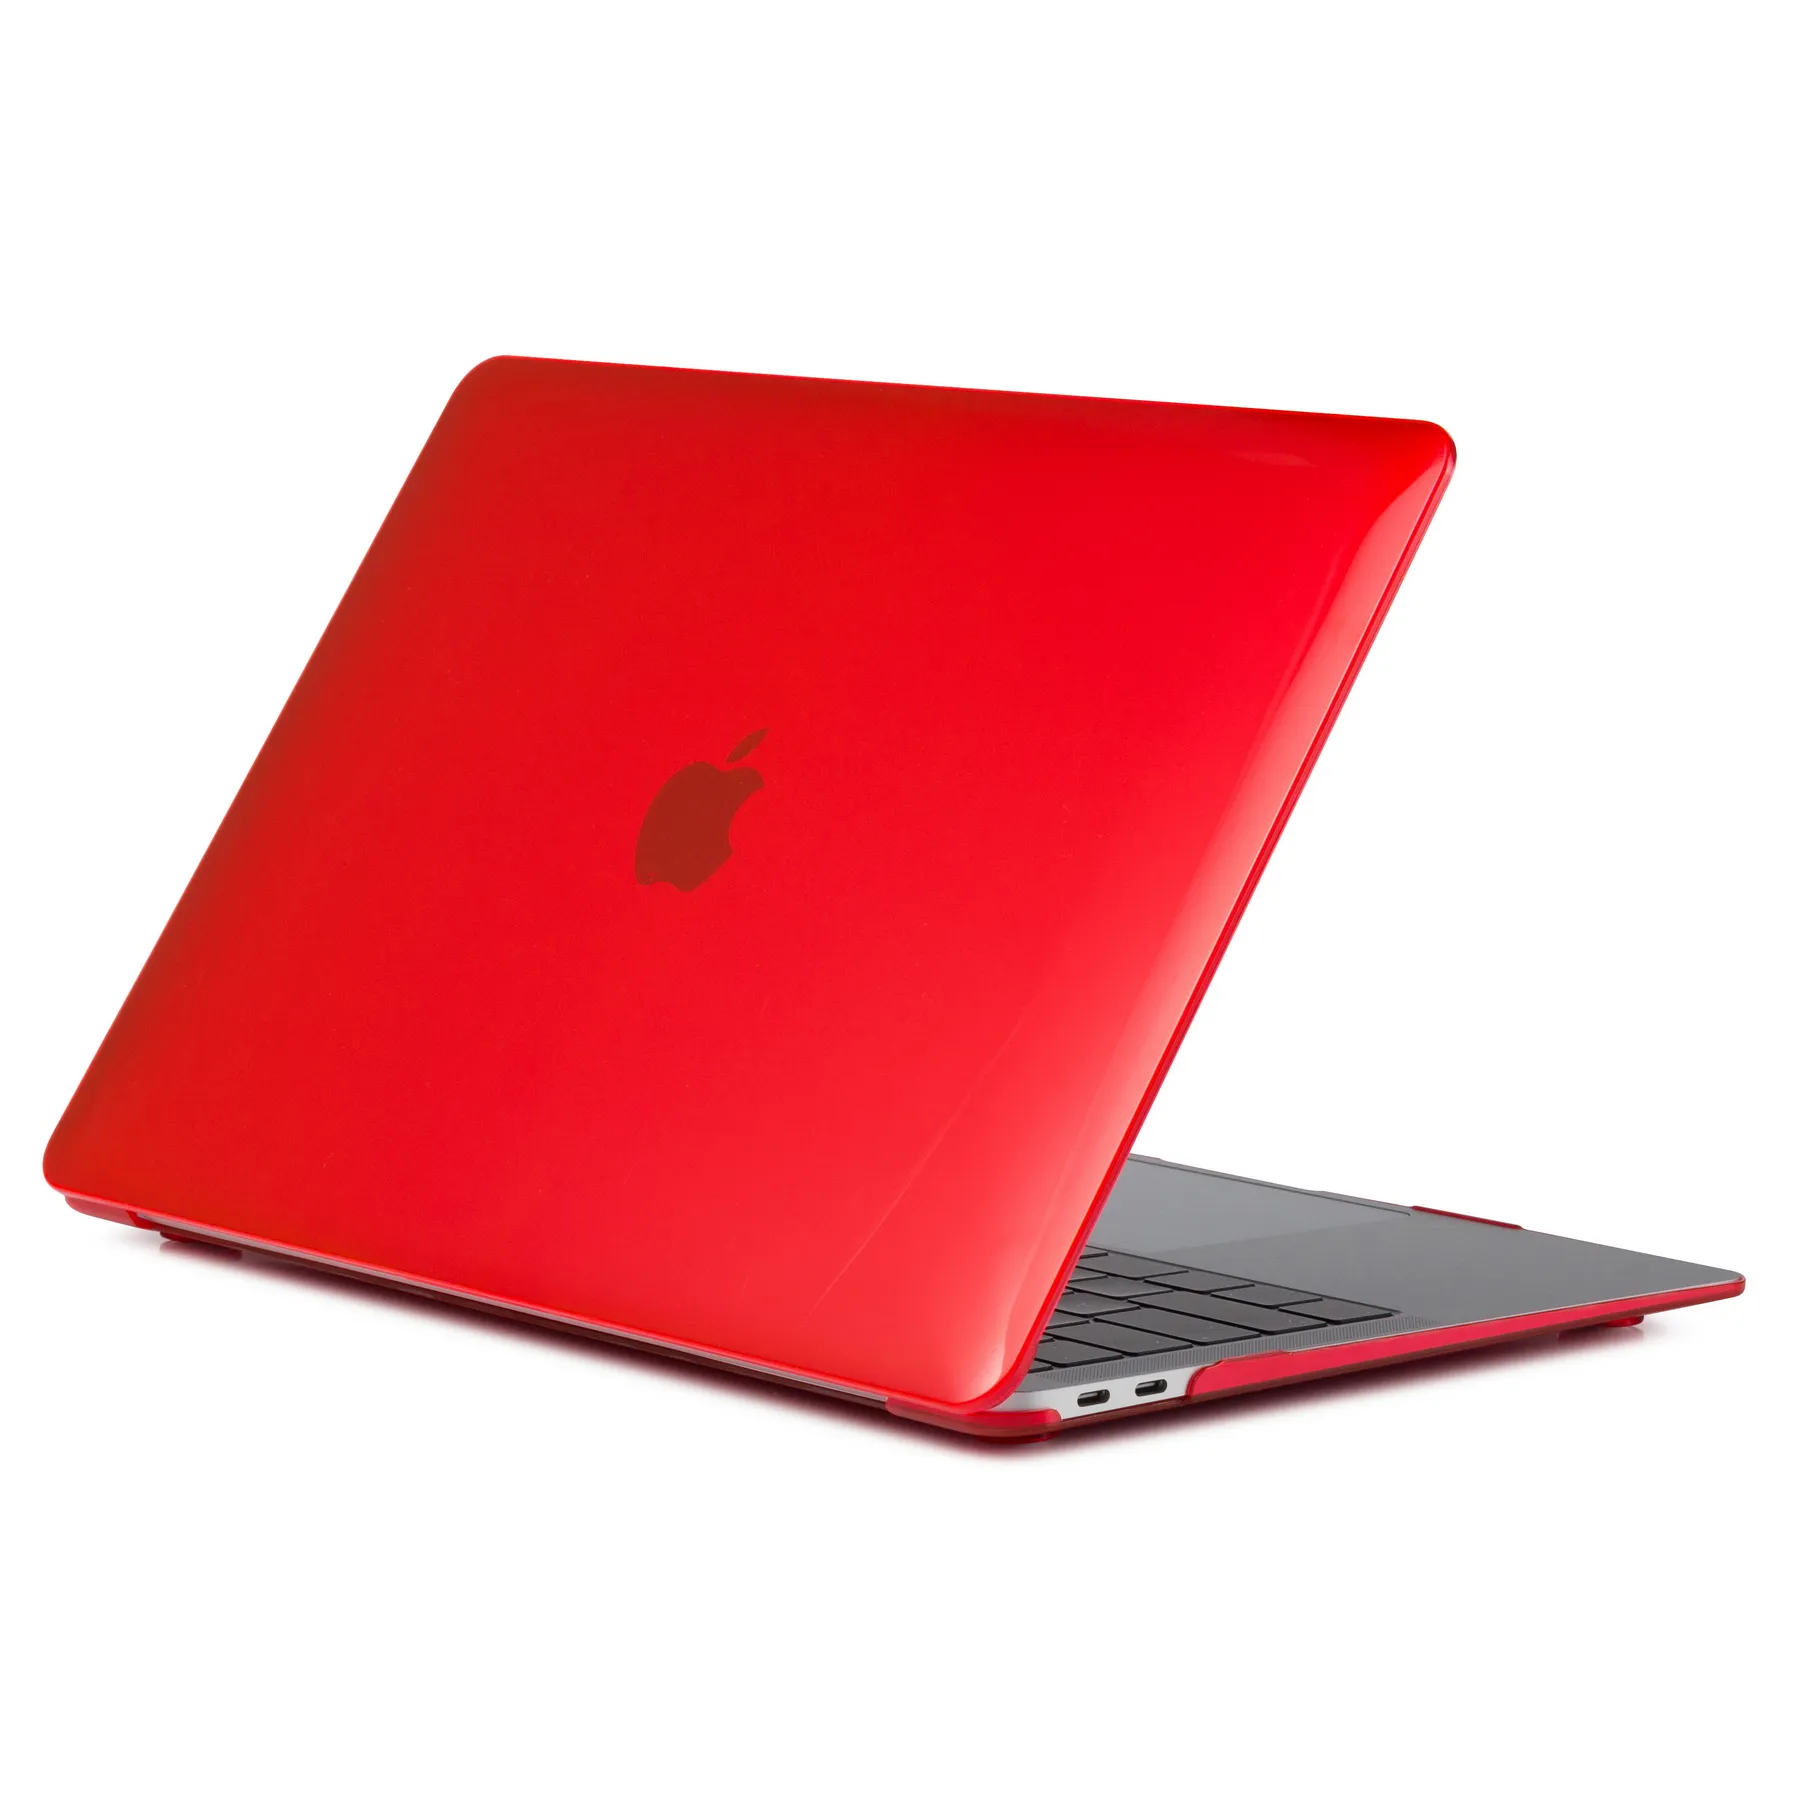 GSCASE популярный тонкий матовый пластиковый жесткий чехол для ноутбука Macbook 12 дюймов защитный чехол